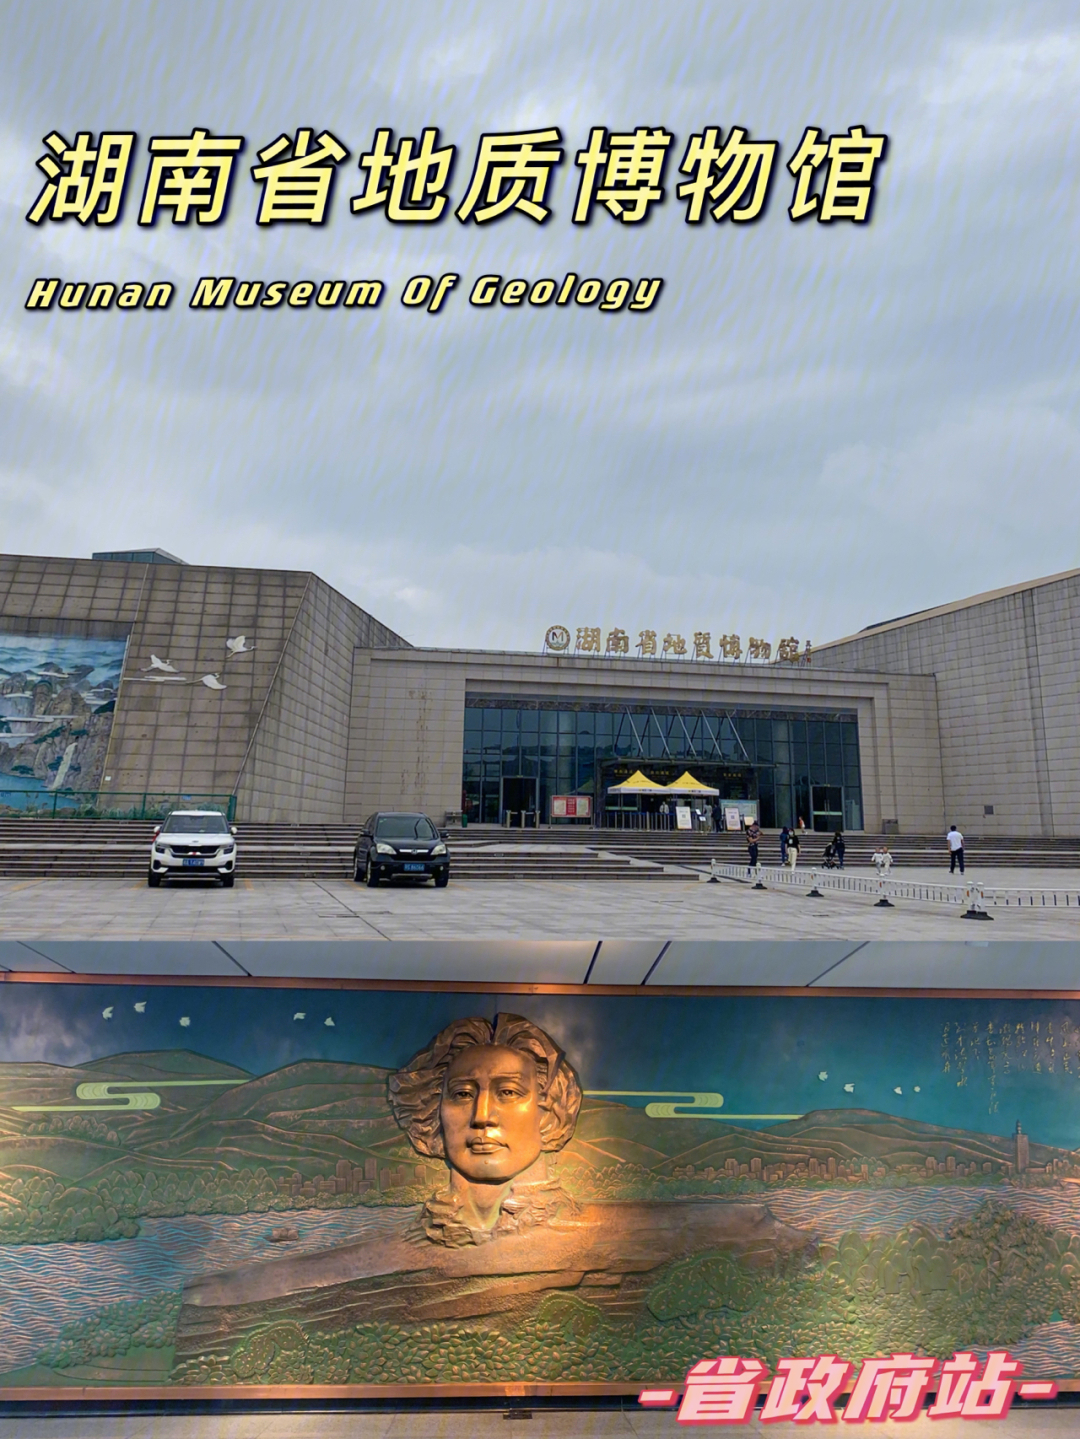 长沙旅行湖南省地质博物馆